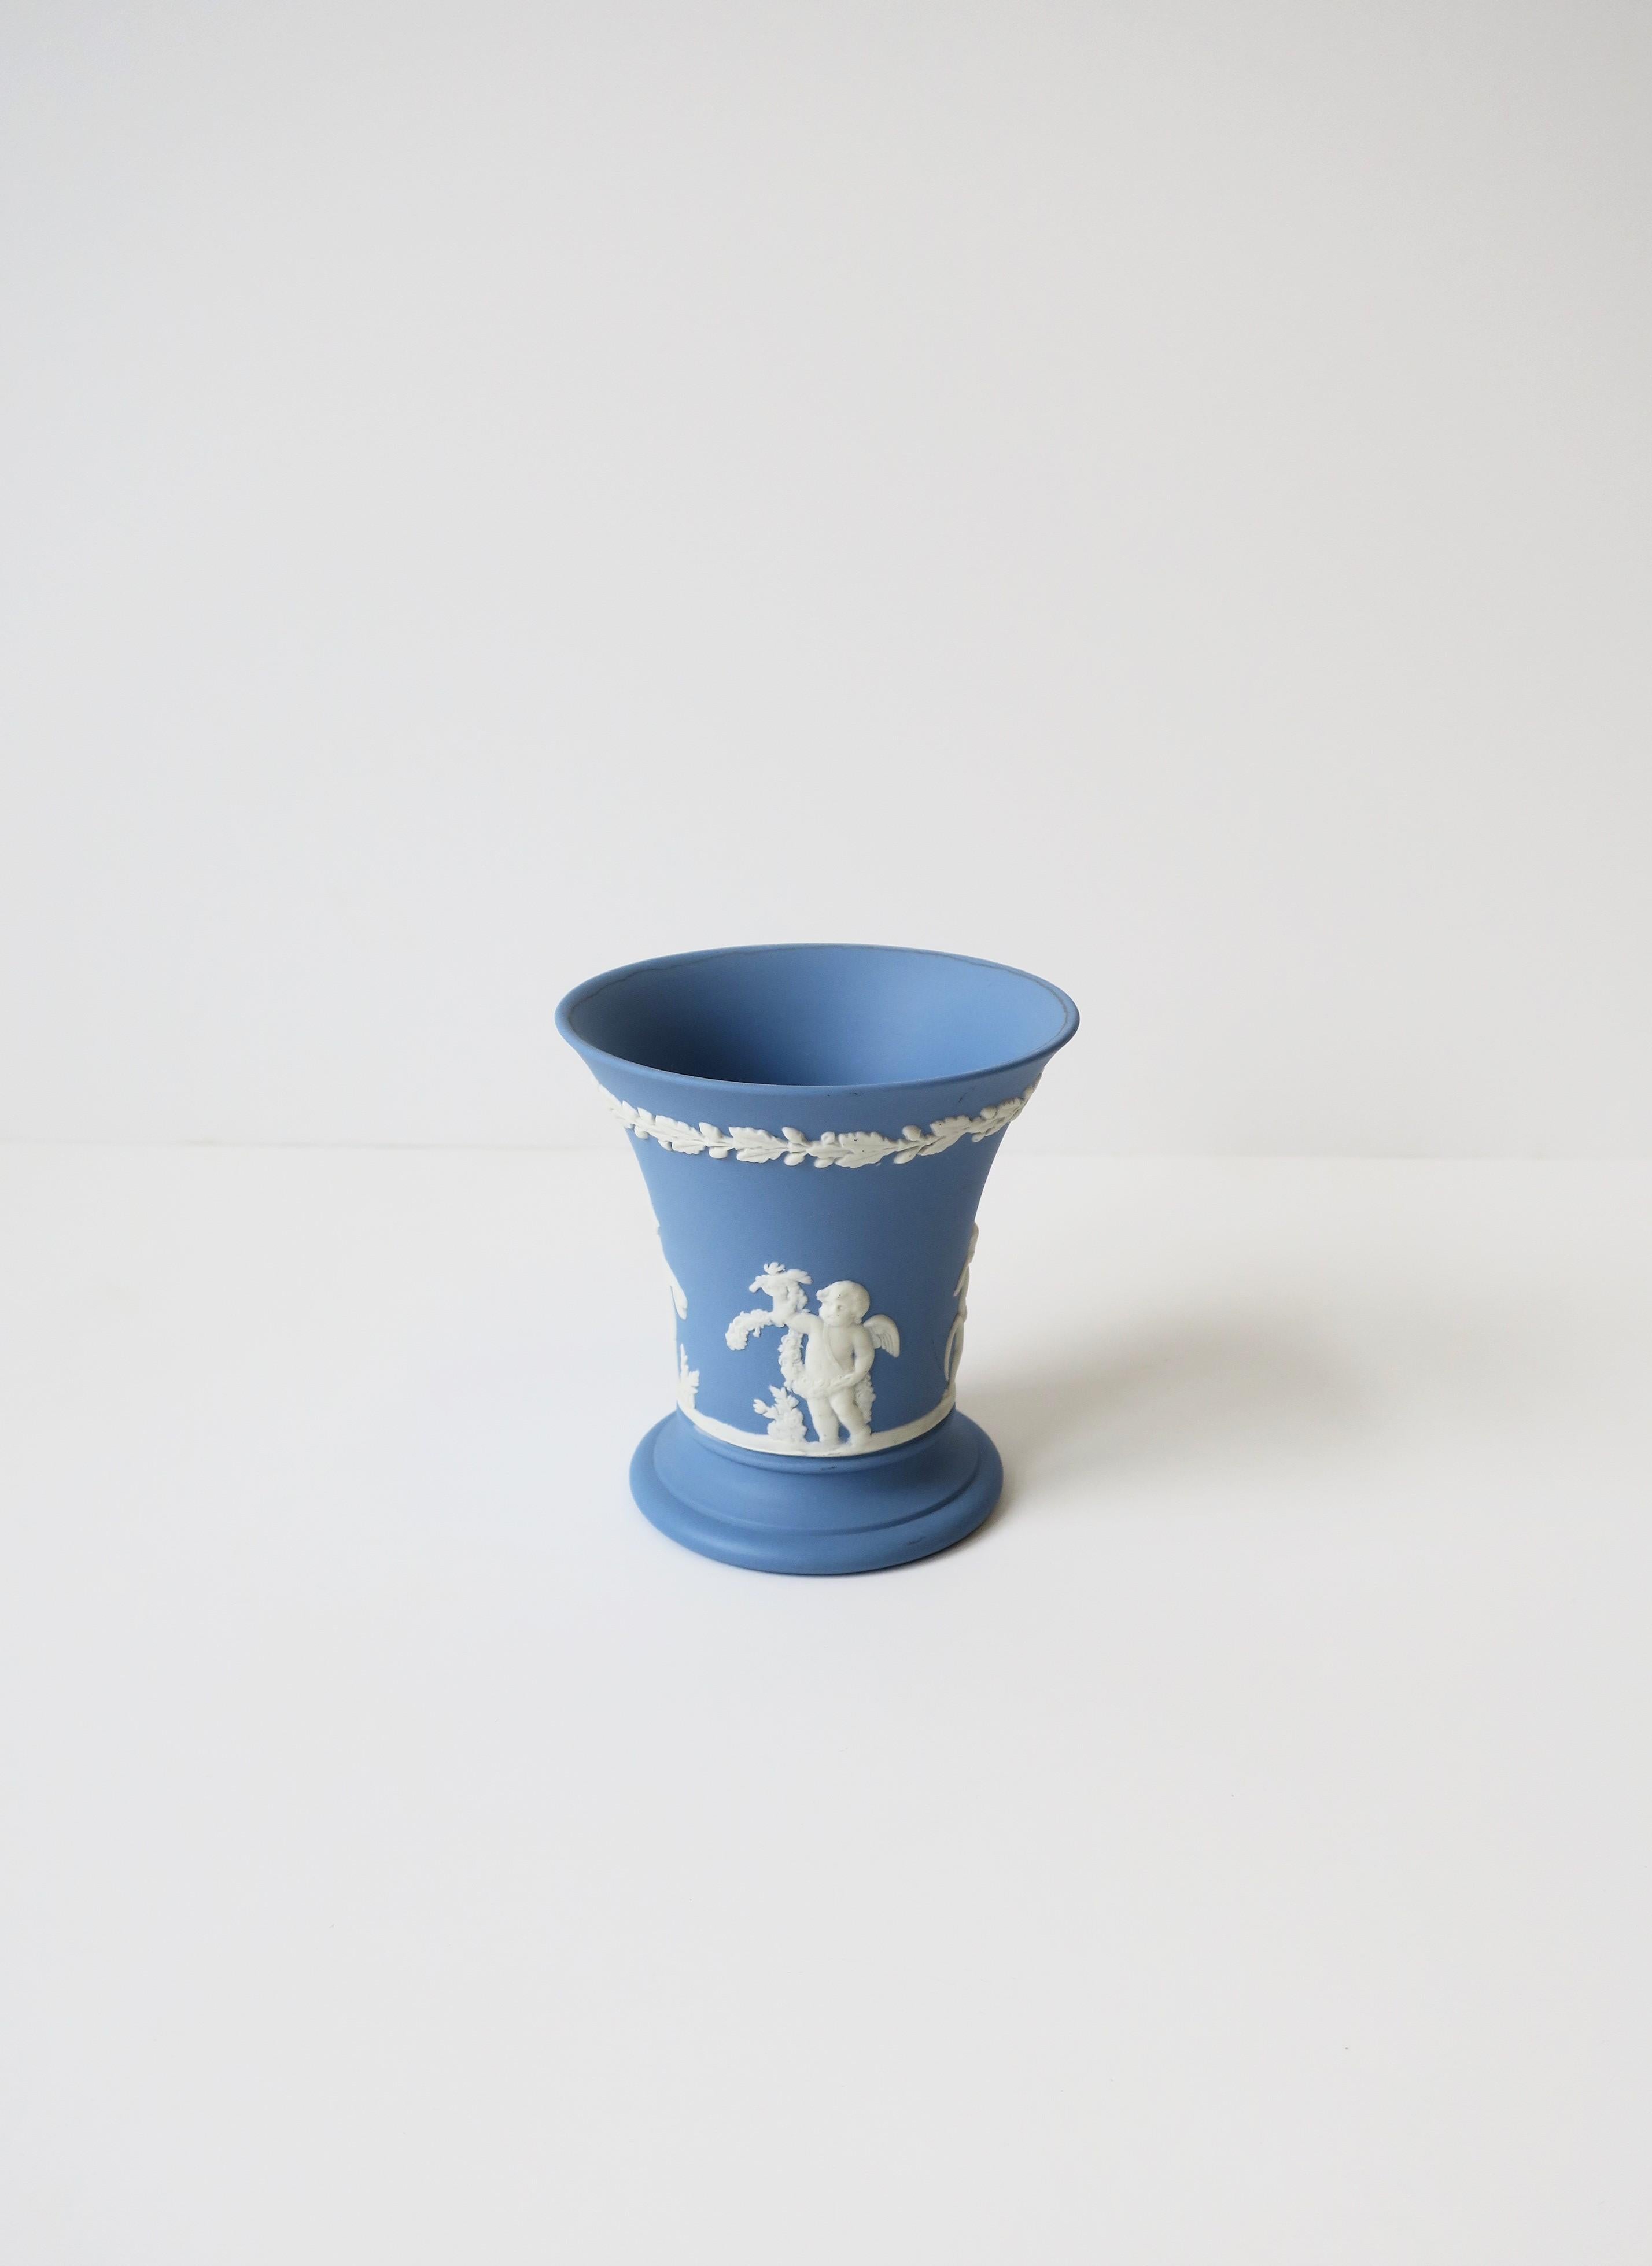 Unglazed English Neoclassical Wedgwood Jasperware Blue and White Vase